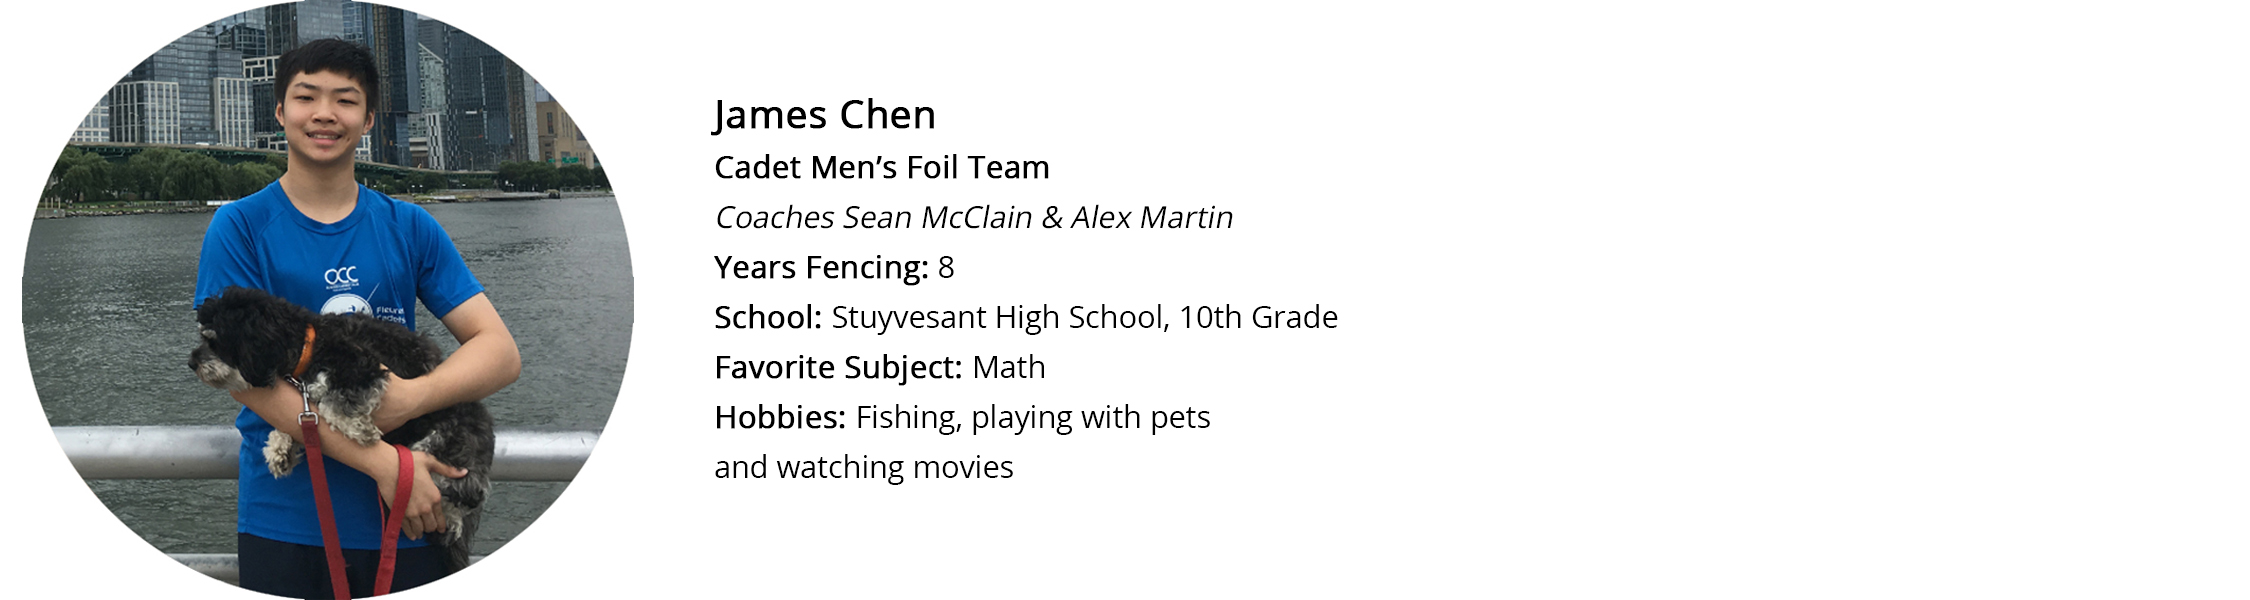 James Chen Profile